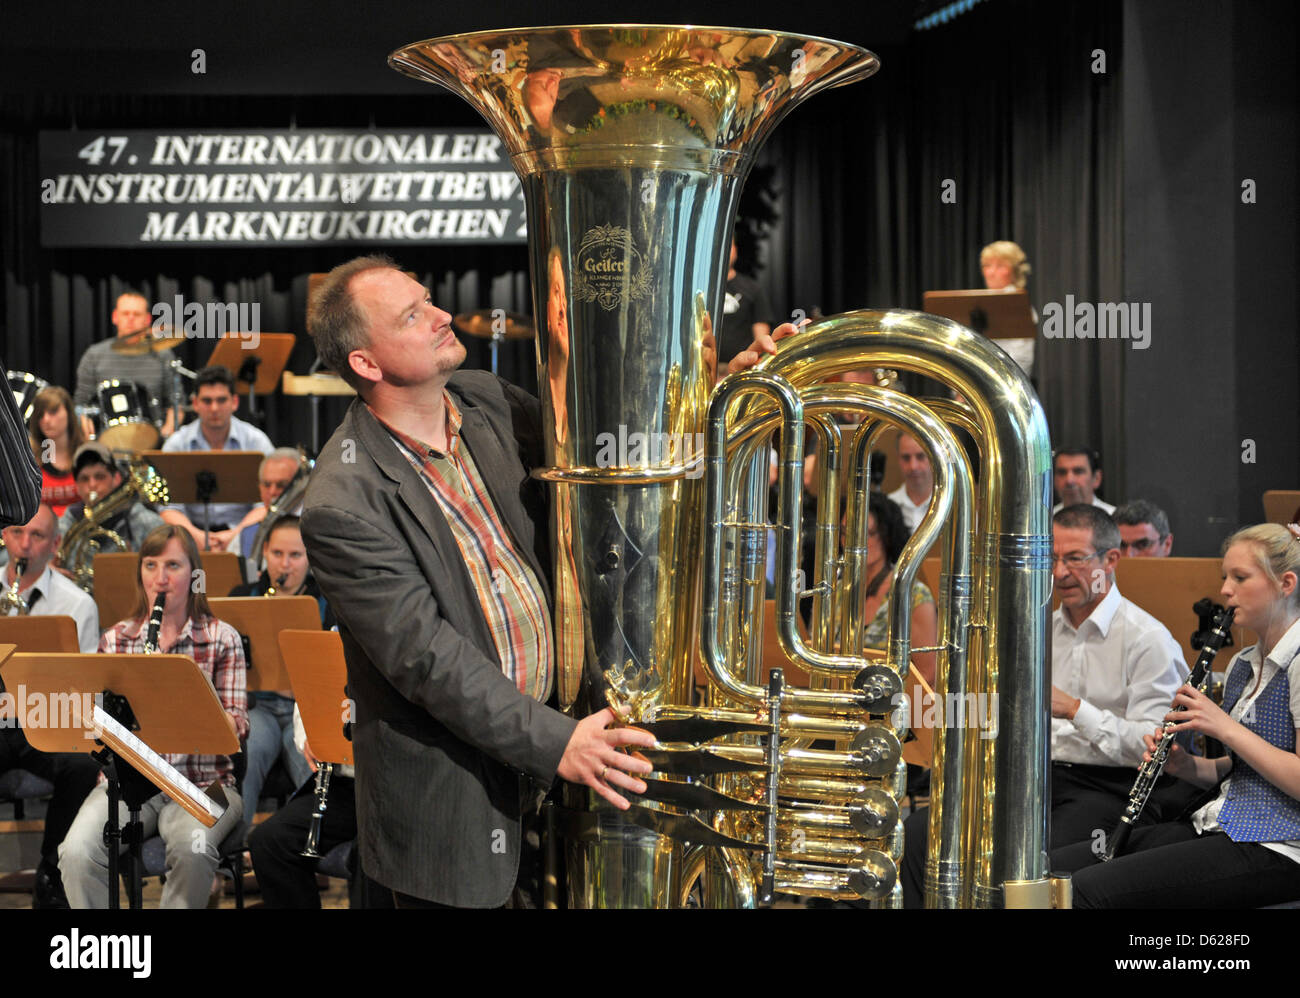 Joerg Wachsmuth aus Dresden spielt "Flight of the Bumblebee" auf die  weltweit größte spielbare Tuba mit dem sinfonischen Orchester der  InMarkneukirchen Markneukirchen, Deutschland, 15. Mai 2012. Die Tuba ist 2  Meter hoch,